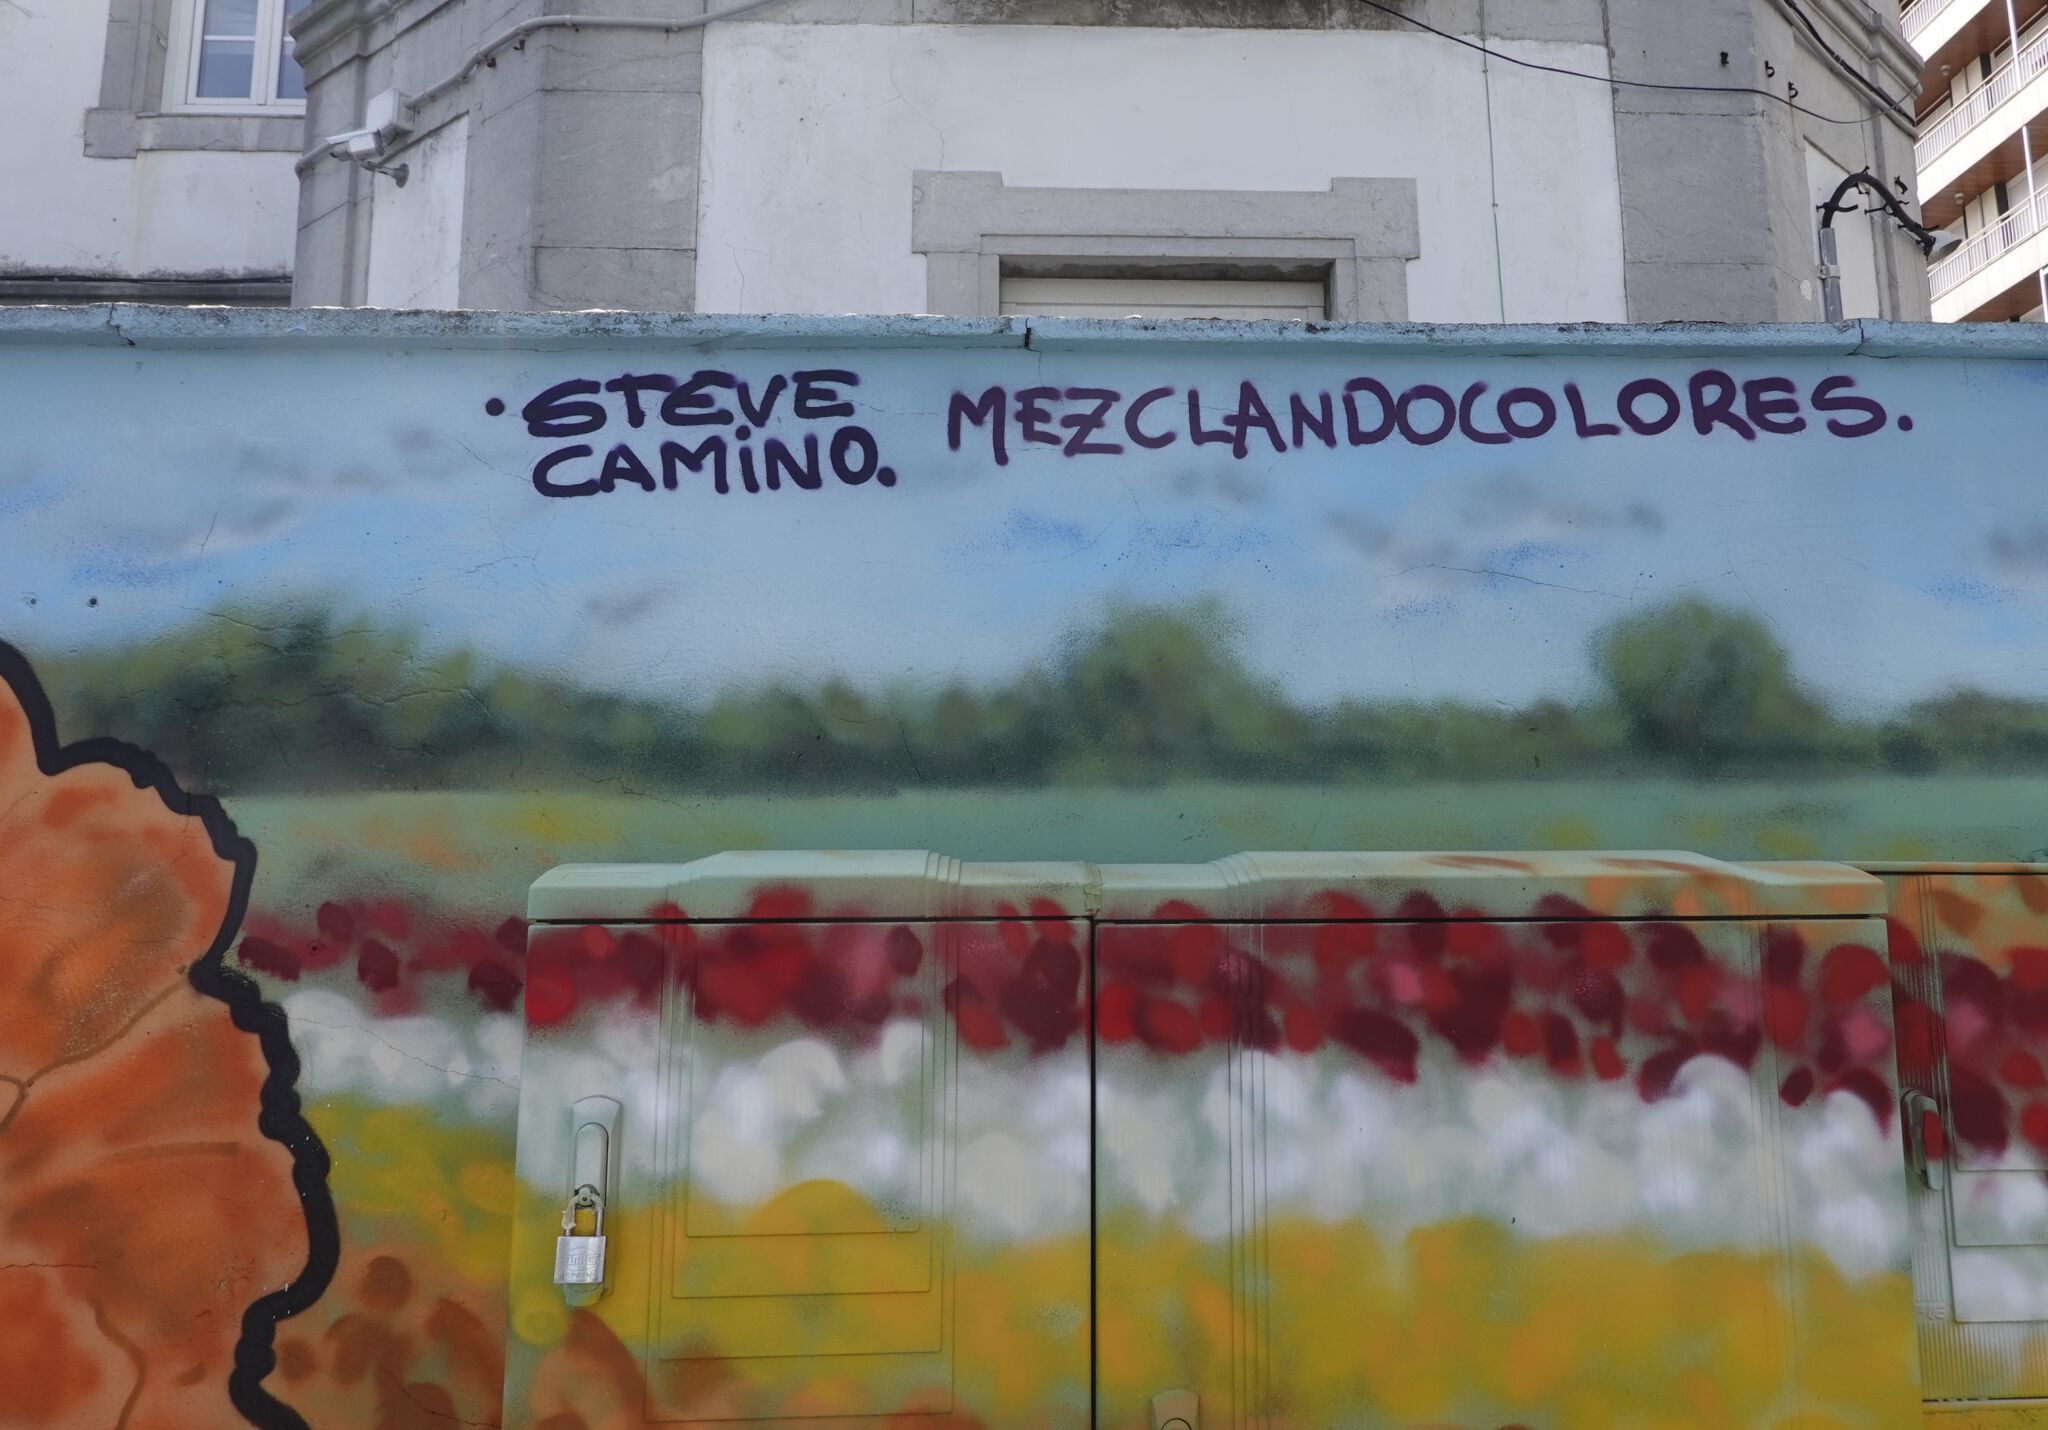 Steve Camino, mezclandocolores83&mdash;Batalla de Flores de Laredo 